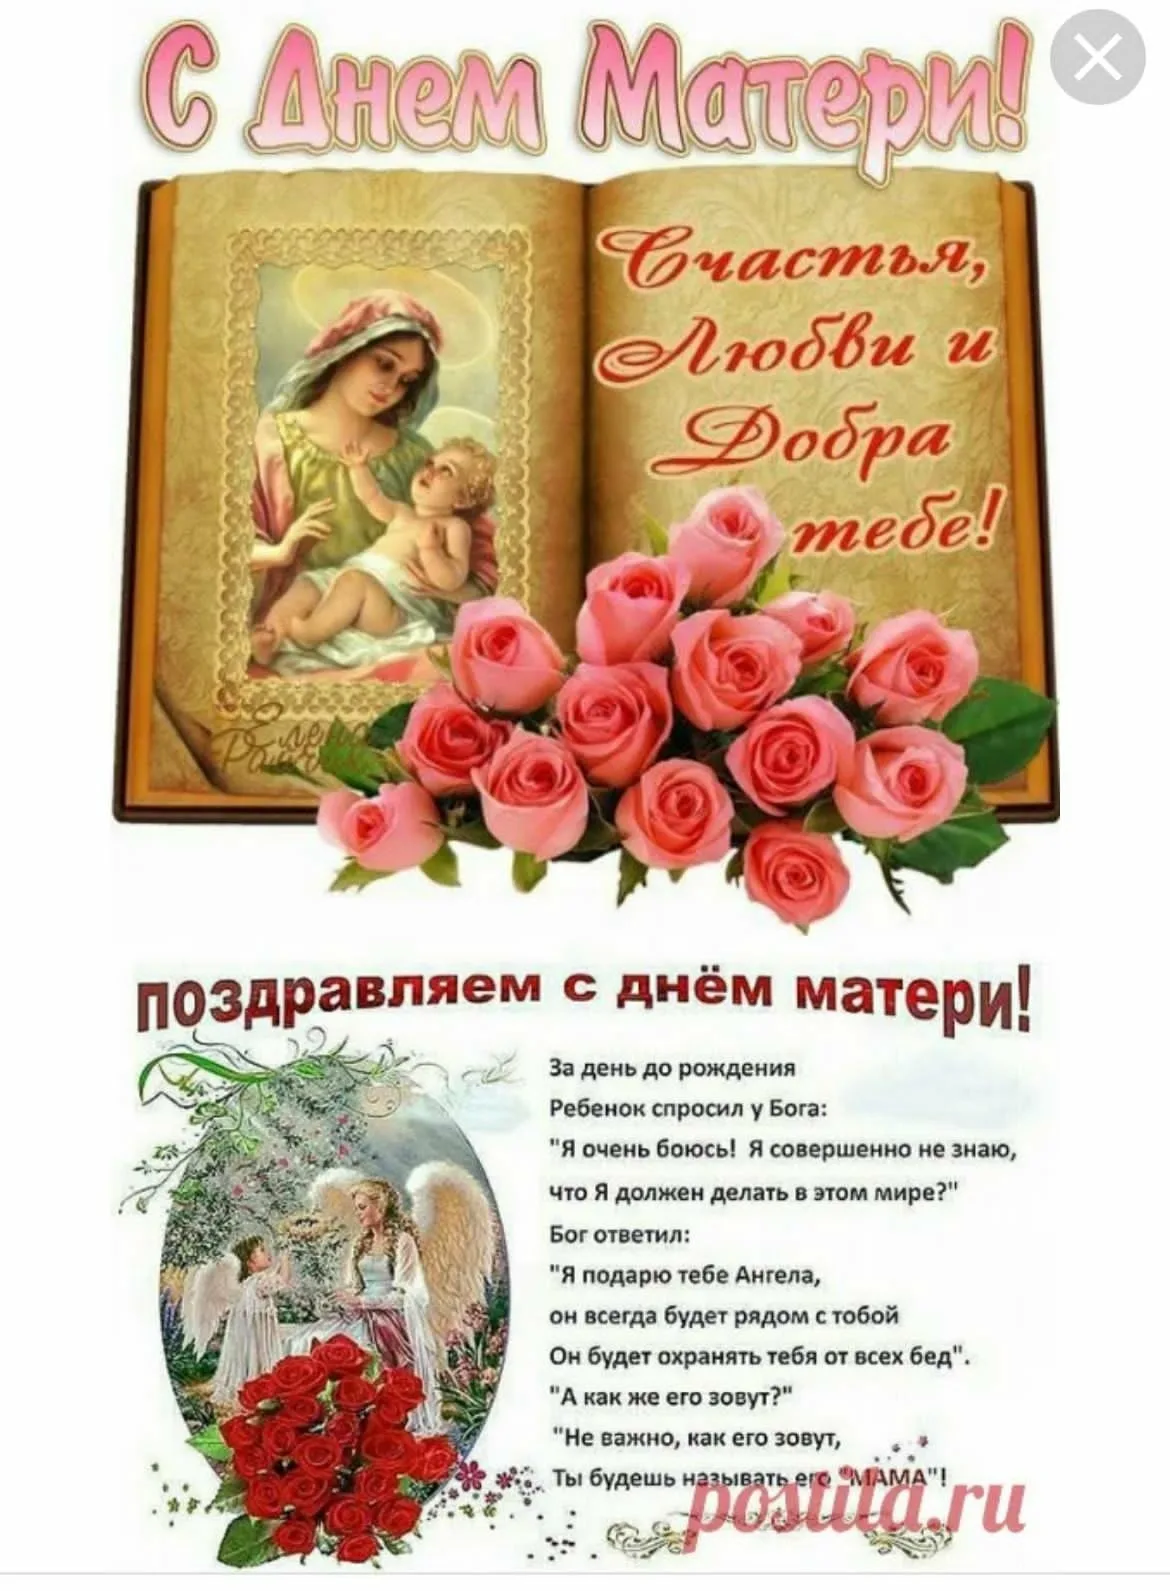 Православный день матери. Поздравление сдеем матери. Поздравления с днем ма ери. Поздравление с днем материи. Поздравления с днём Матеи.